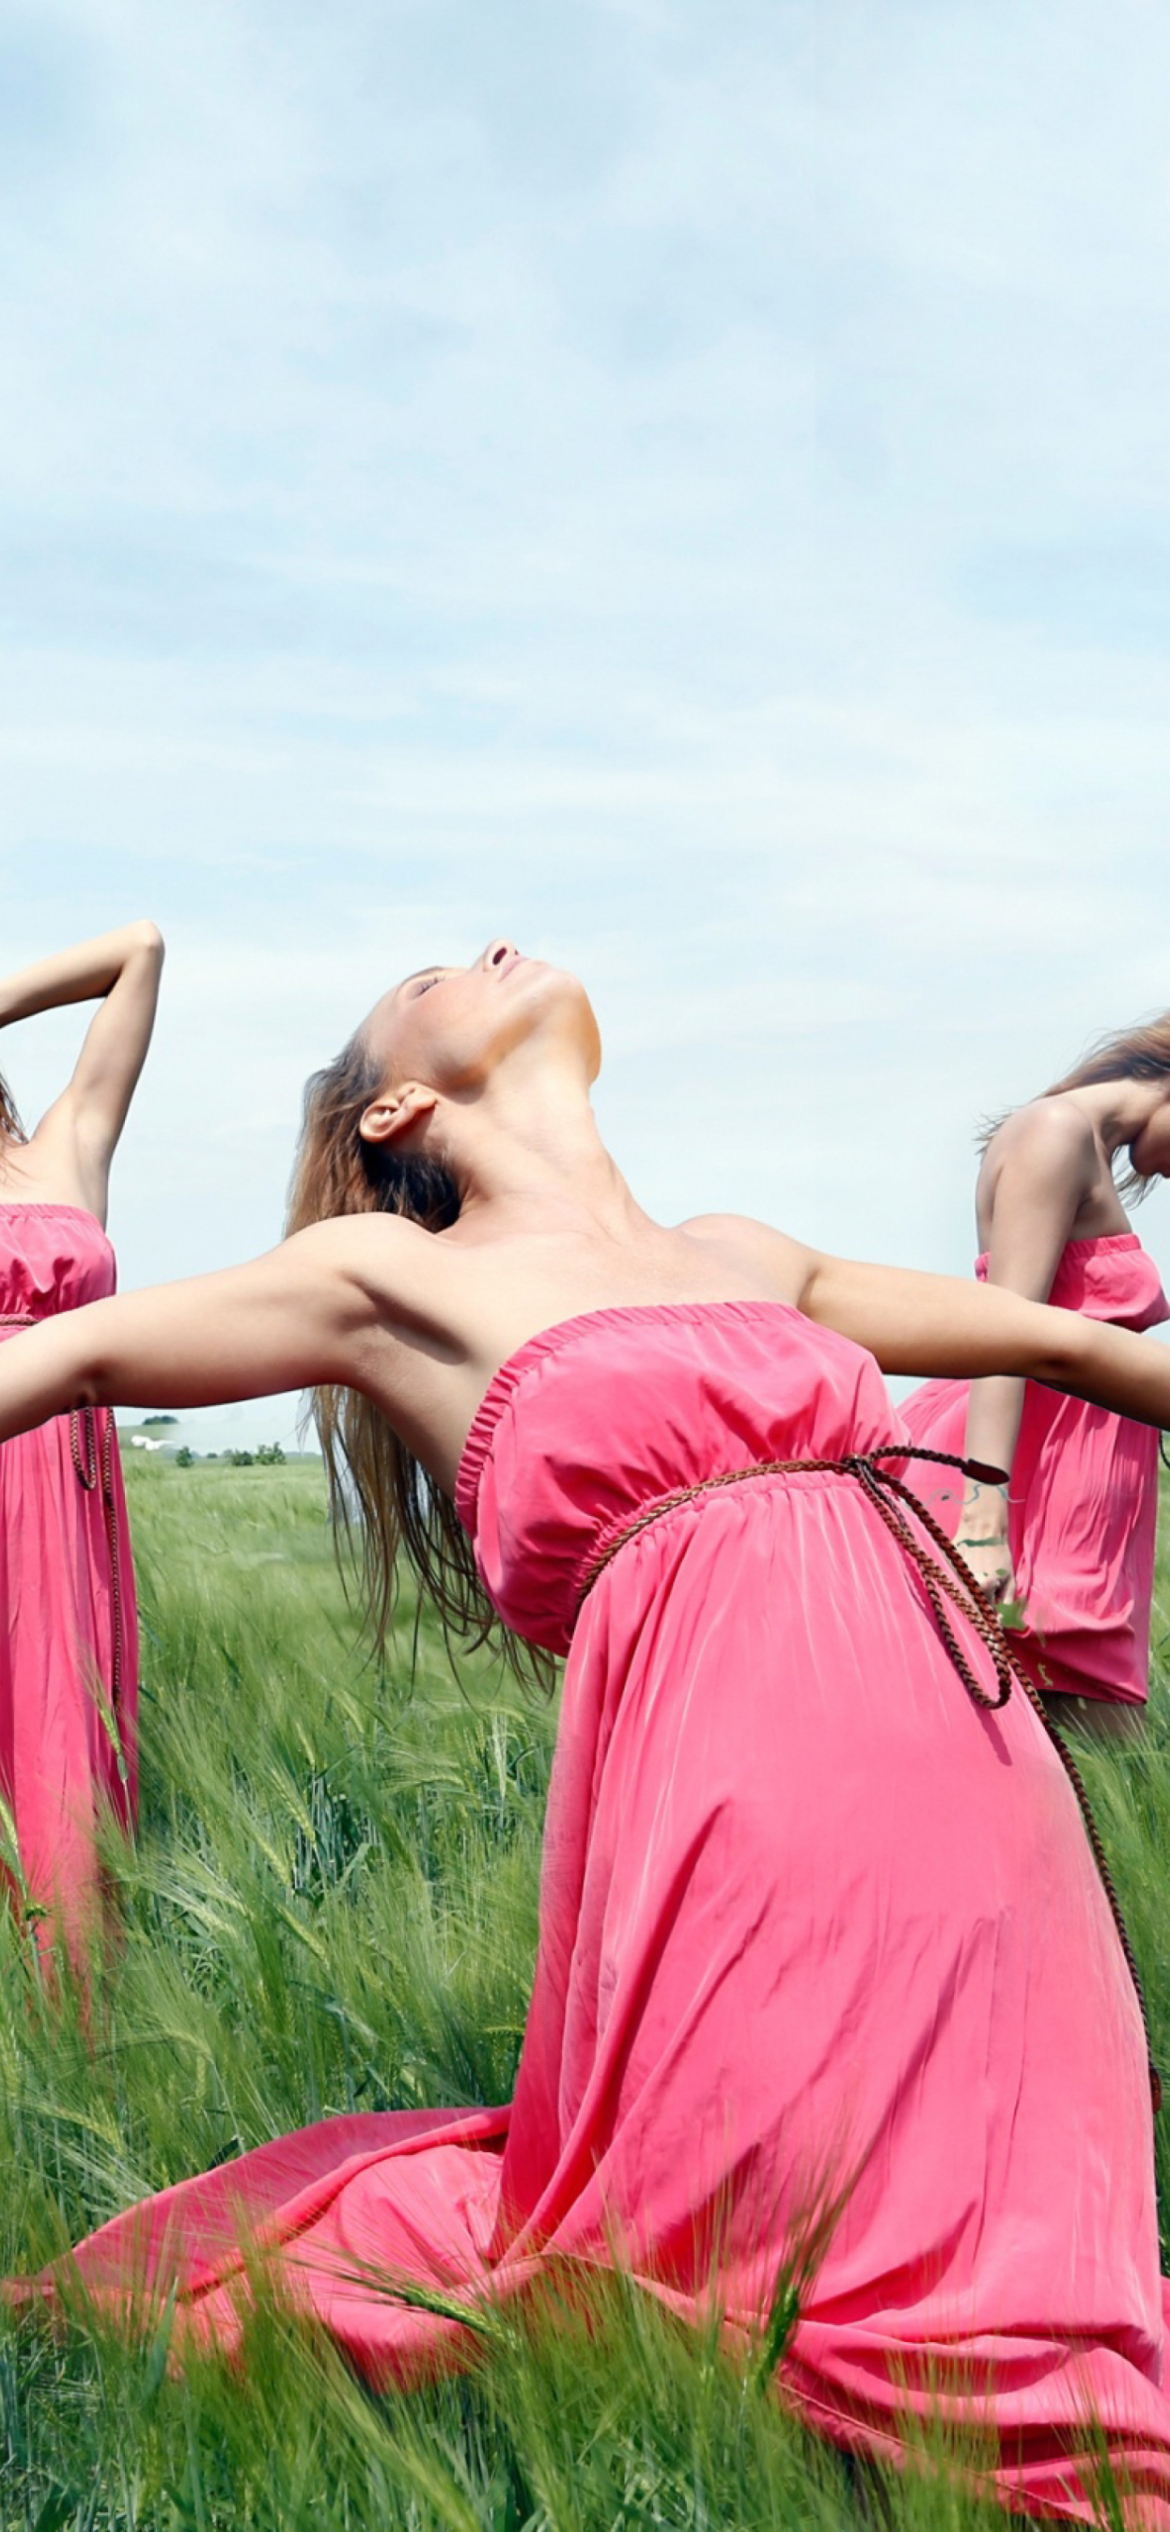 Girl In Pink Dress Dancing In Green Fields wallpaper 1170x2532